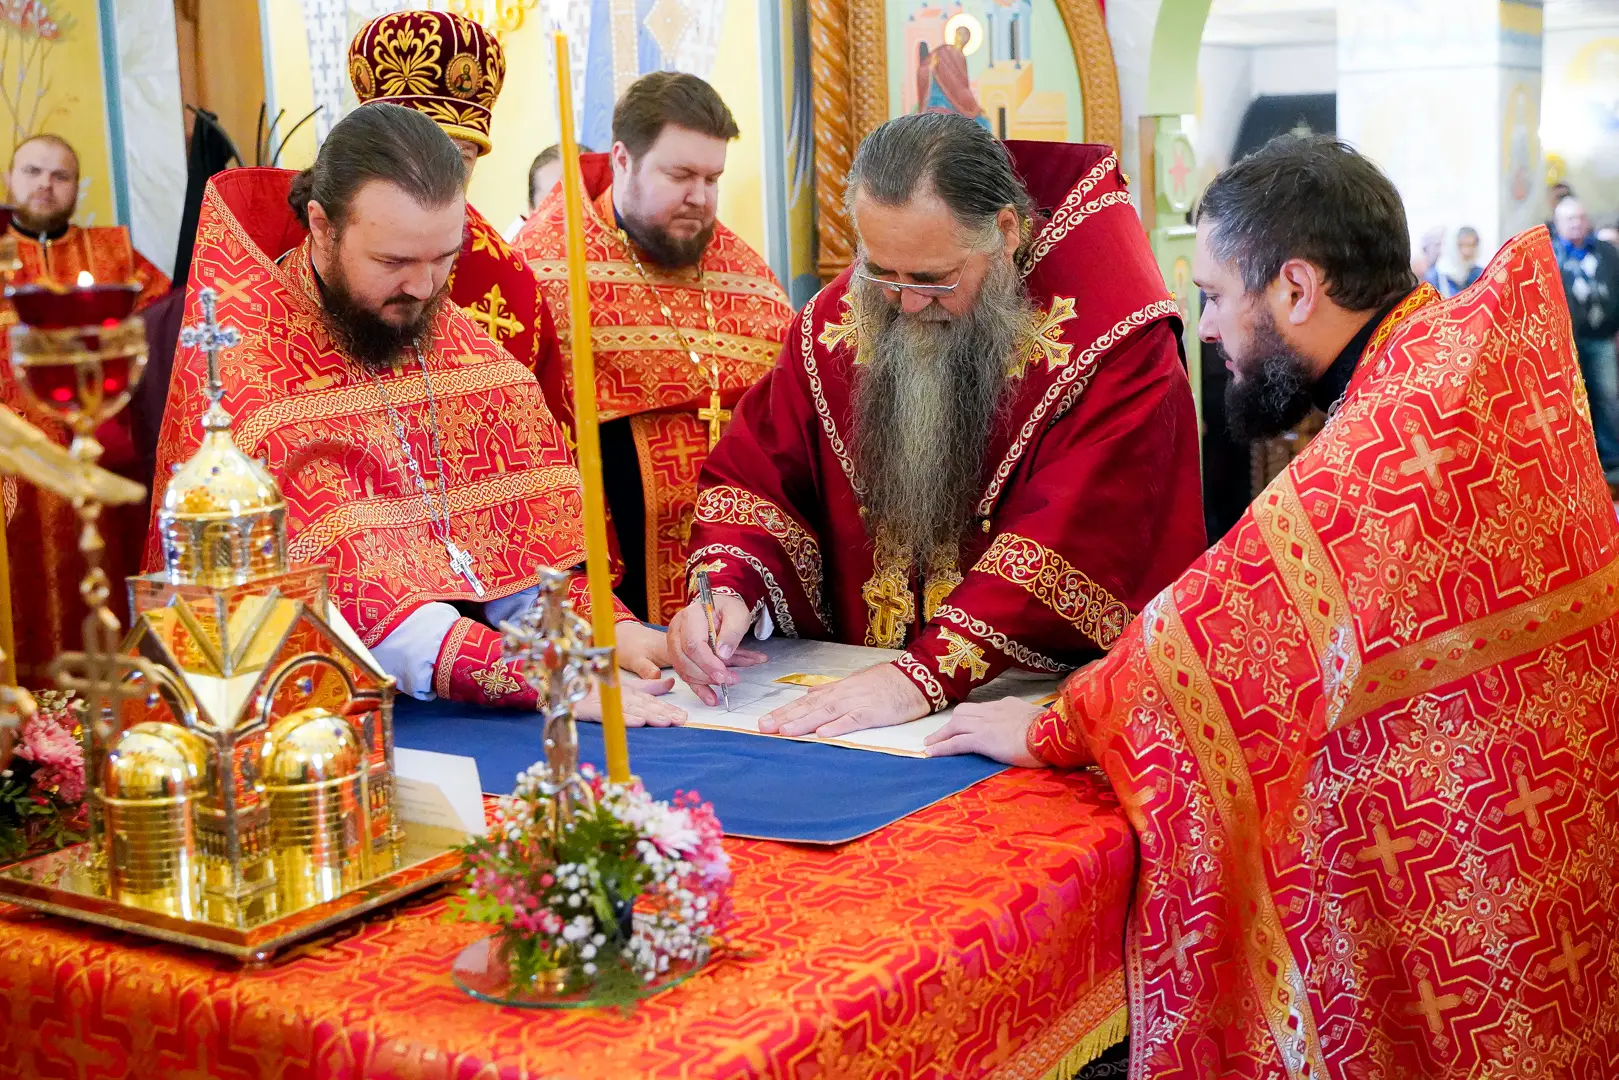 Первый в России храм в честь мученика Алексия Нейдгардта освящен в Нижнем Новгороде